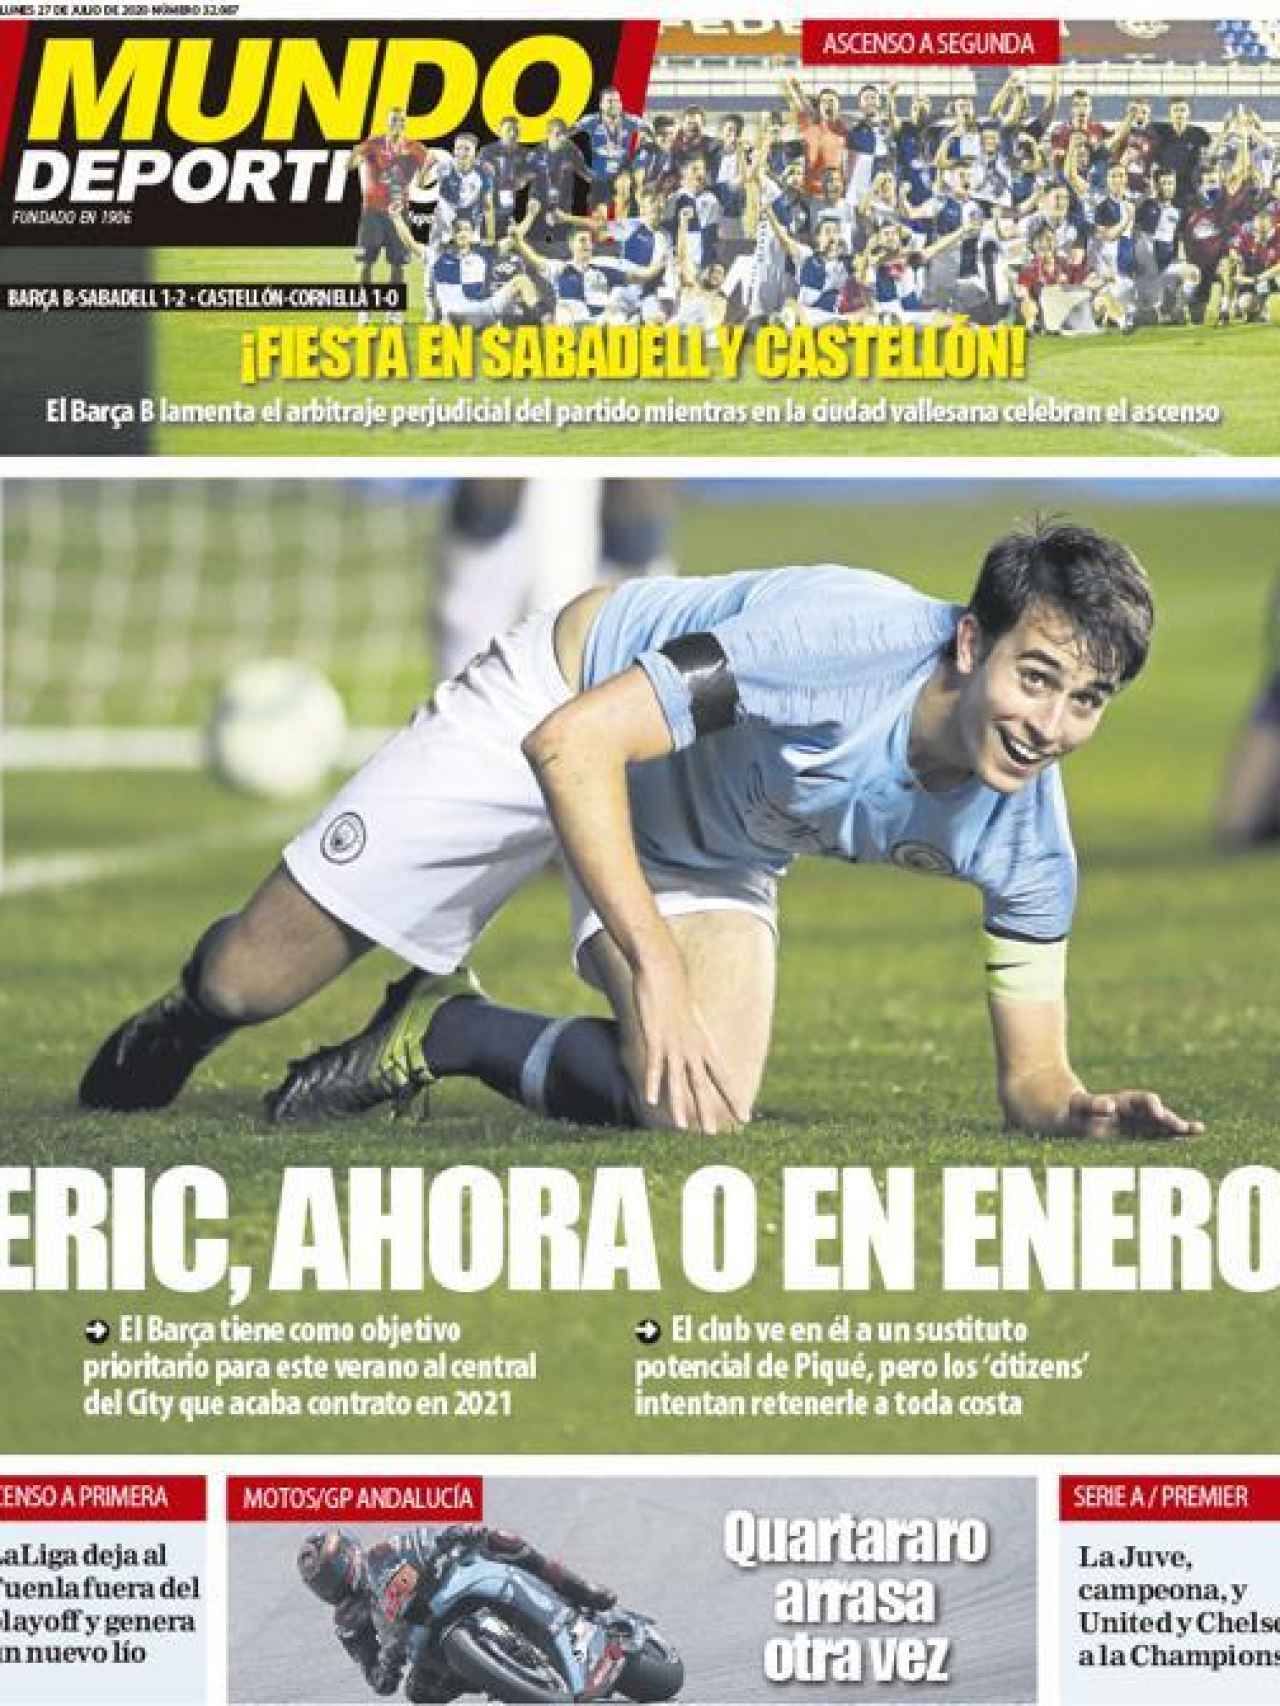 La portada del diario Mundo Deportivo (27/07/2020)